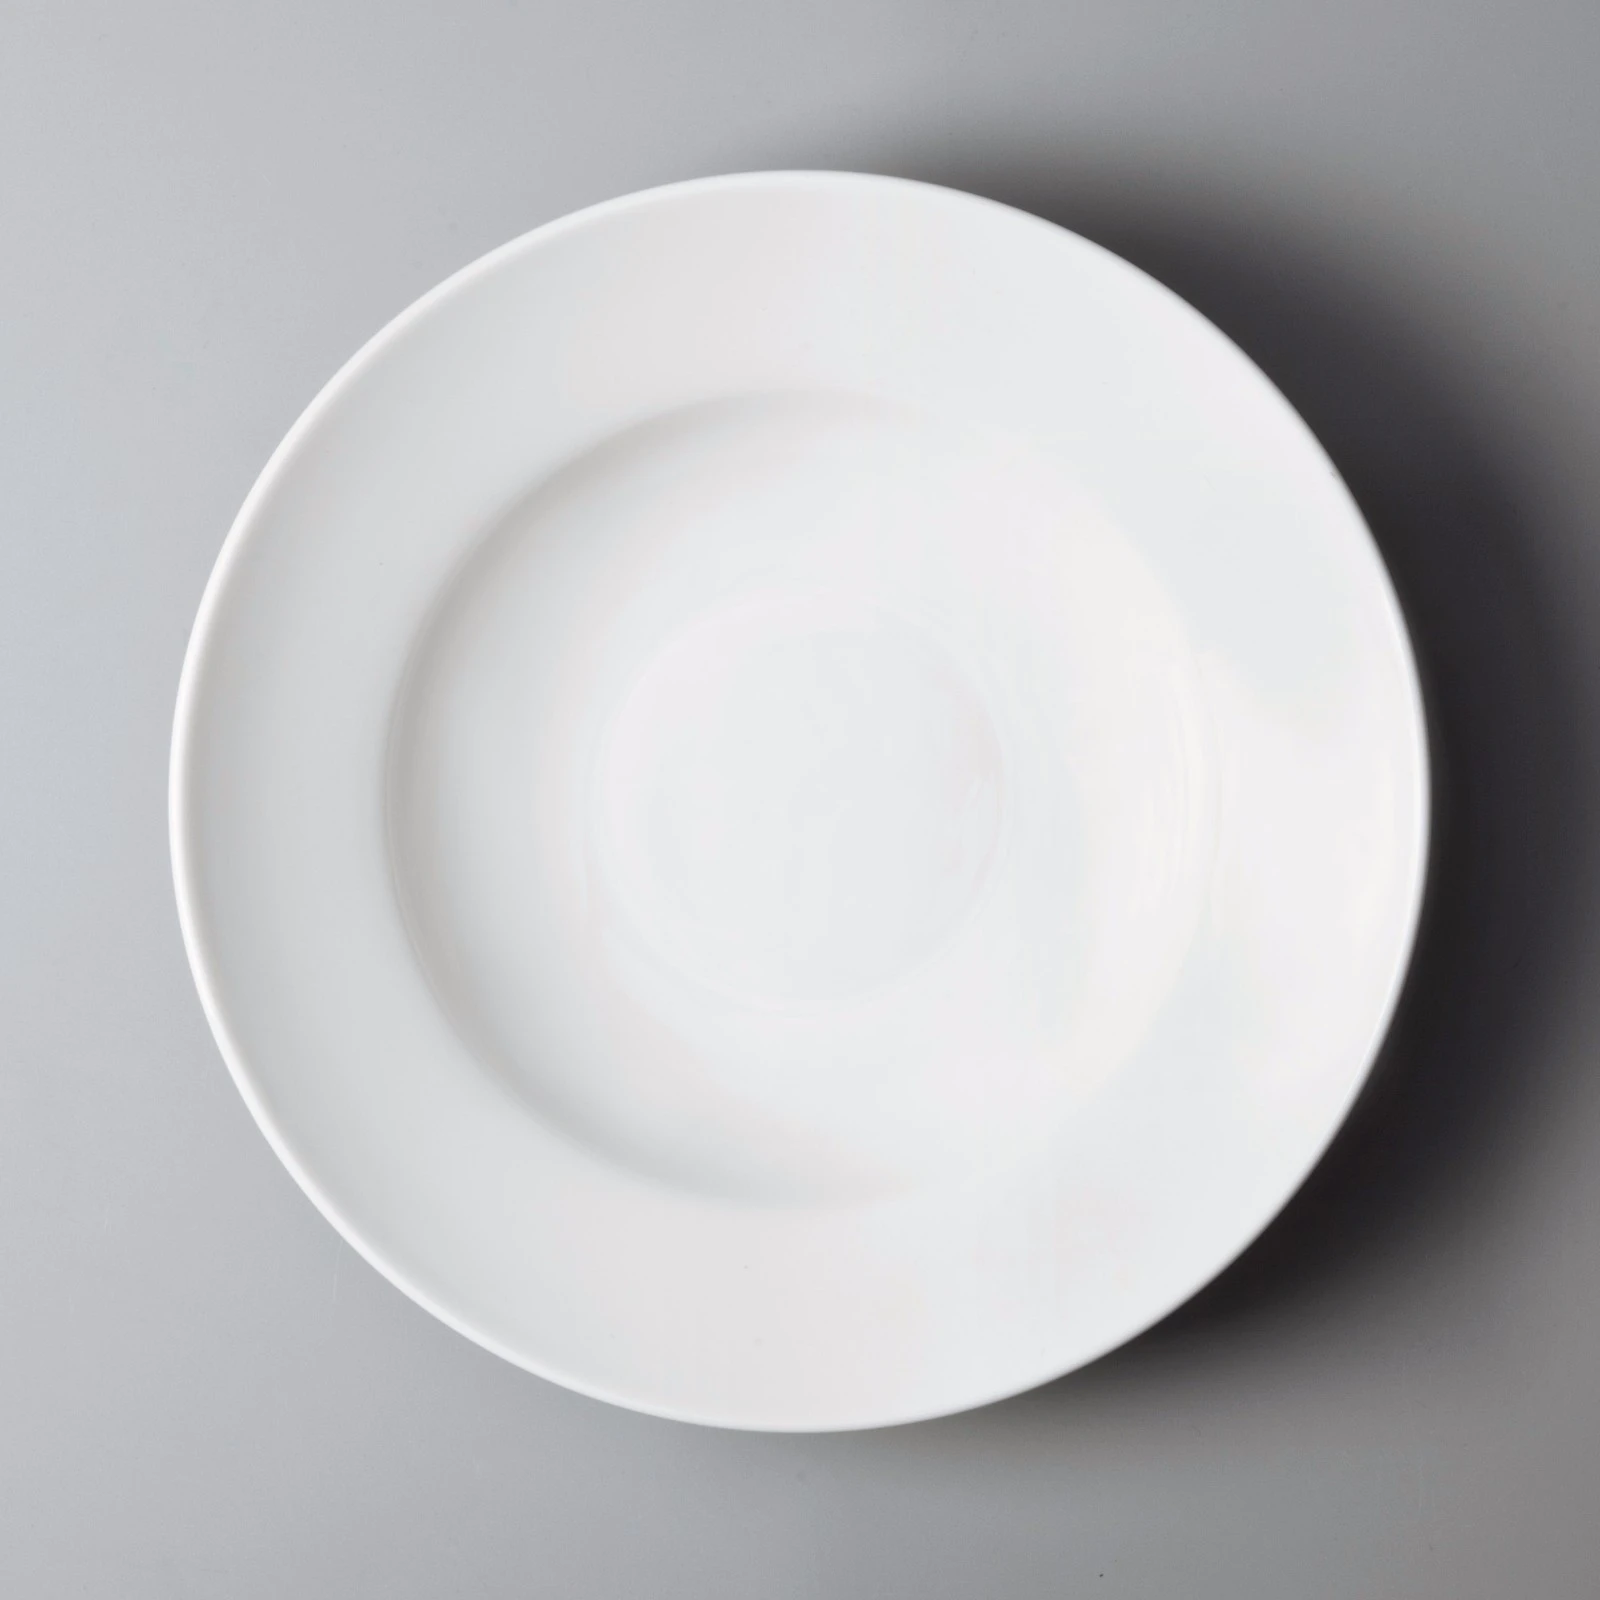 Italian style white porcelain dinner plates bulk manufacturer for kitchen Two Eight